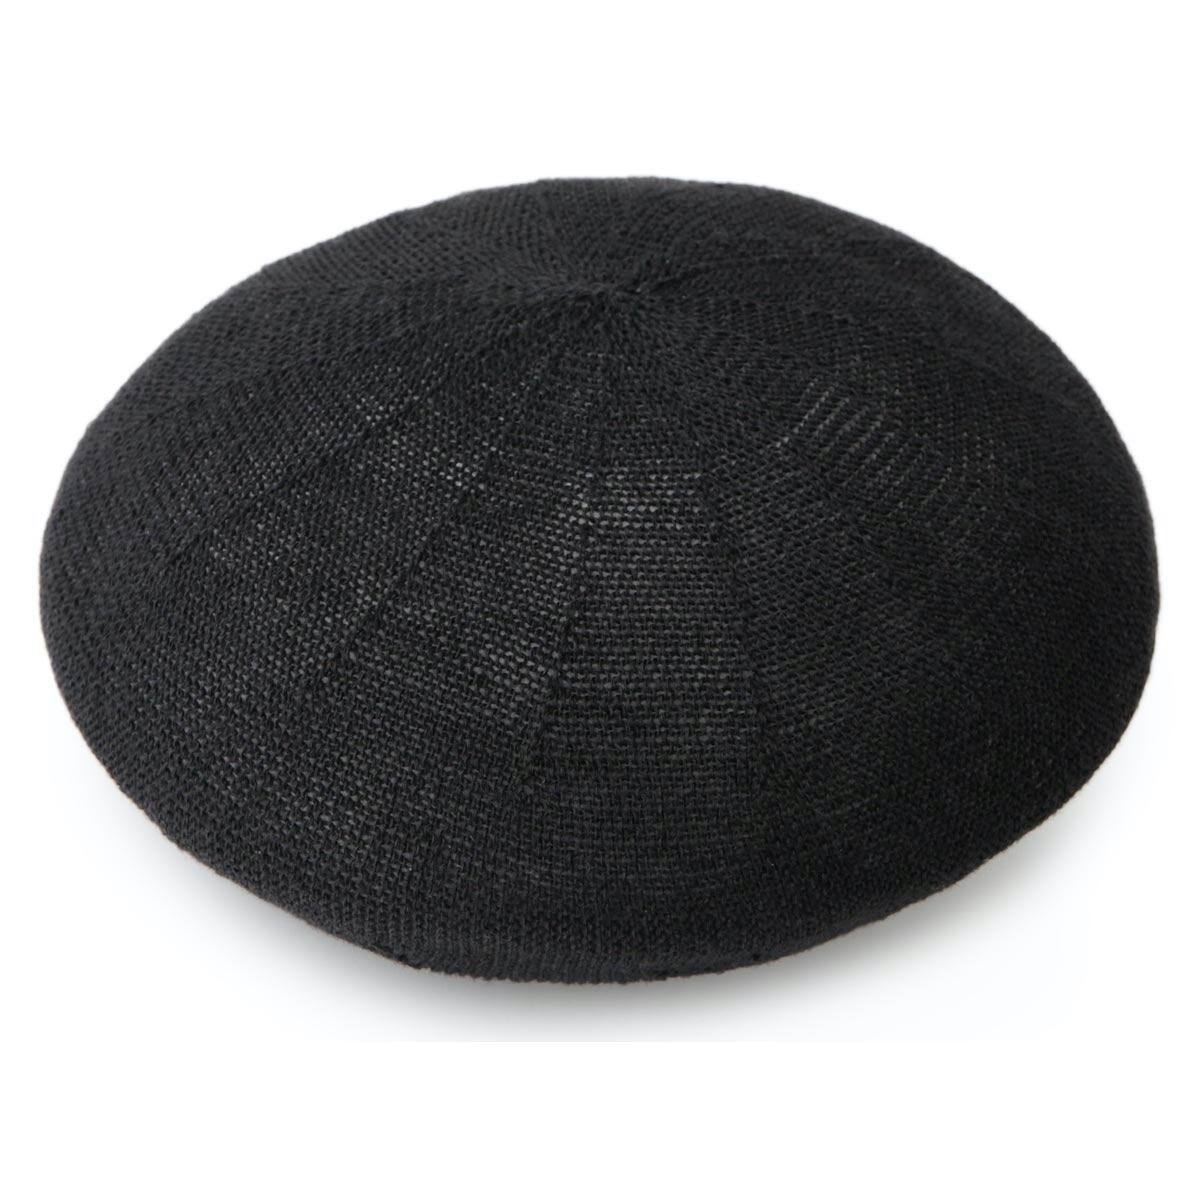 驚きの値段 帽子 RIVER UP LINEN THERMO BERET リバーアップ リネンサーモベレー3 190円 sarozambia.com